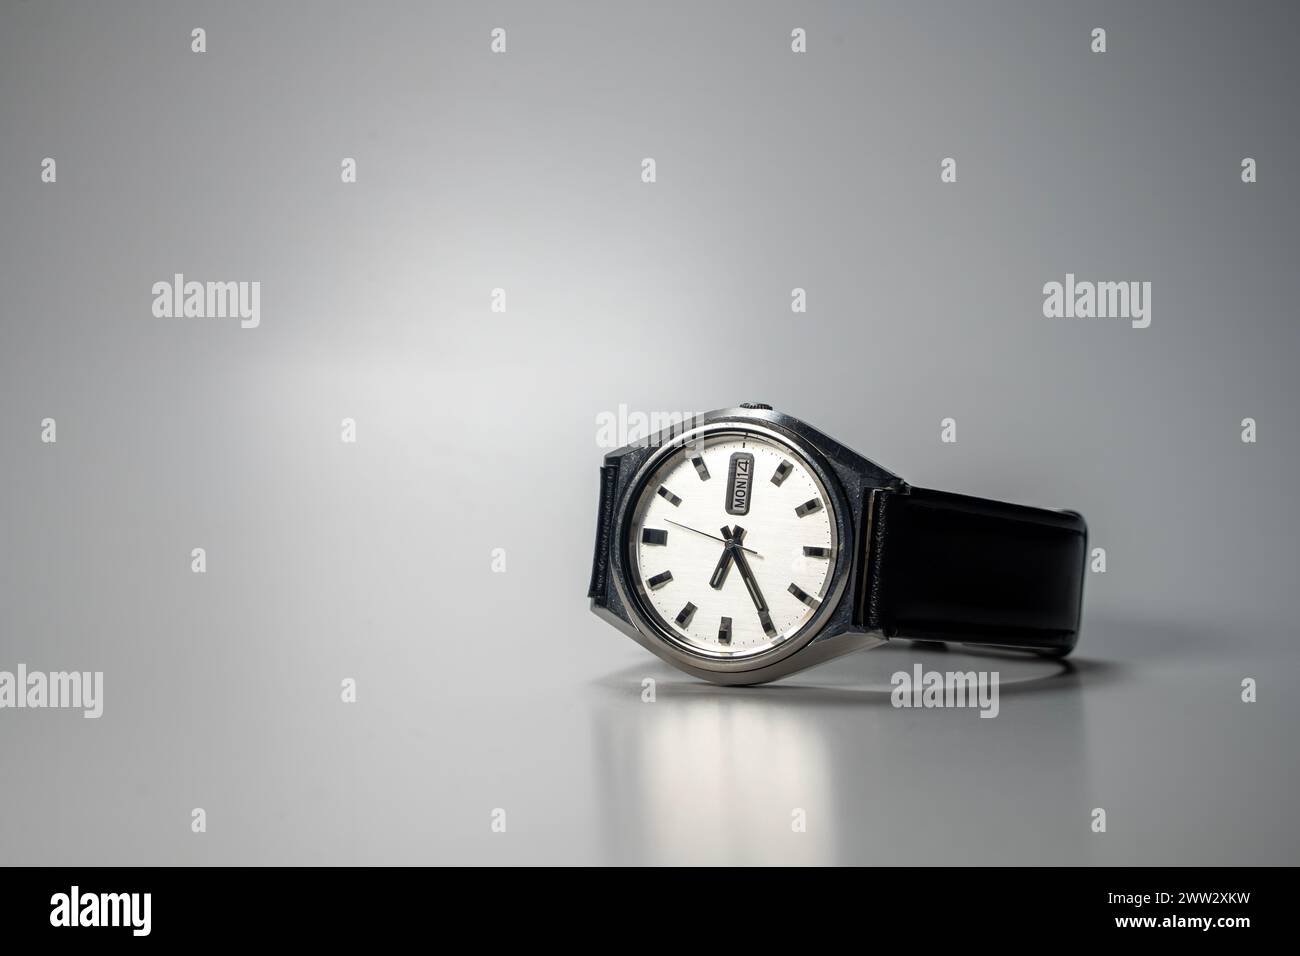 Vintage reloj de pulsera automático con correa de cuero, colocado en la superficie gris Foto de stock